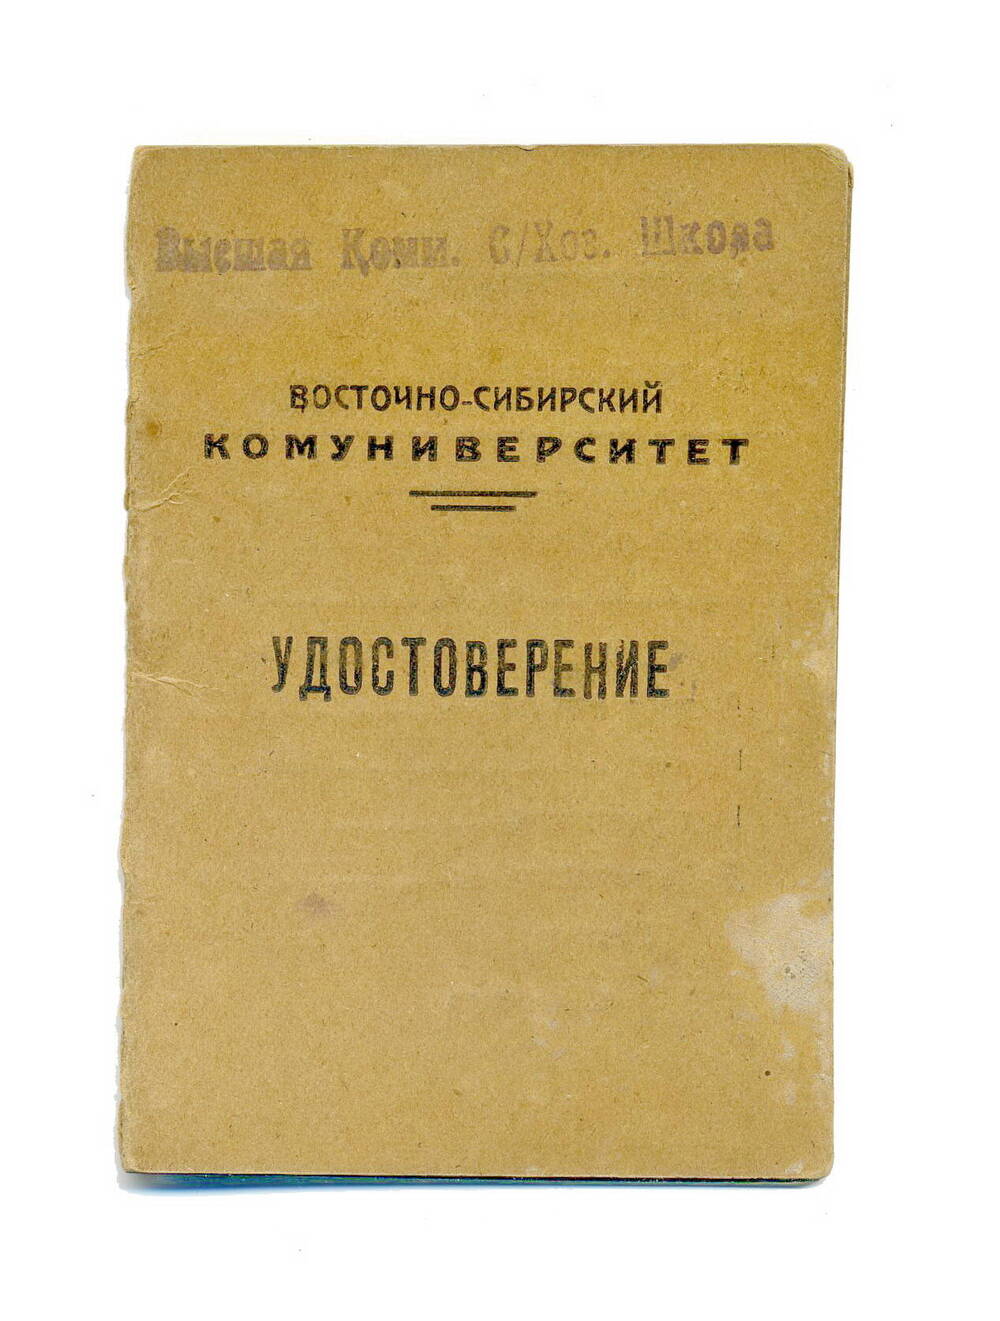 Удостоверение студента  Шерстнева Н.Т., 1933г.